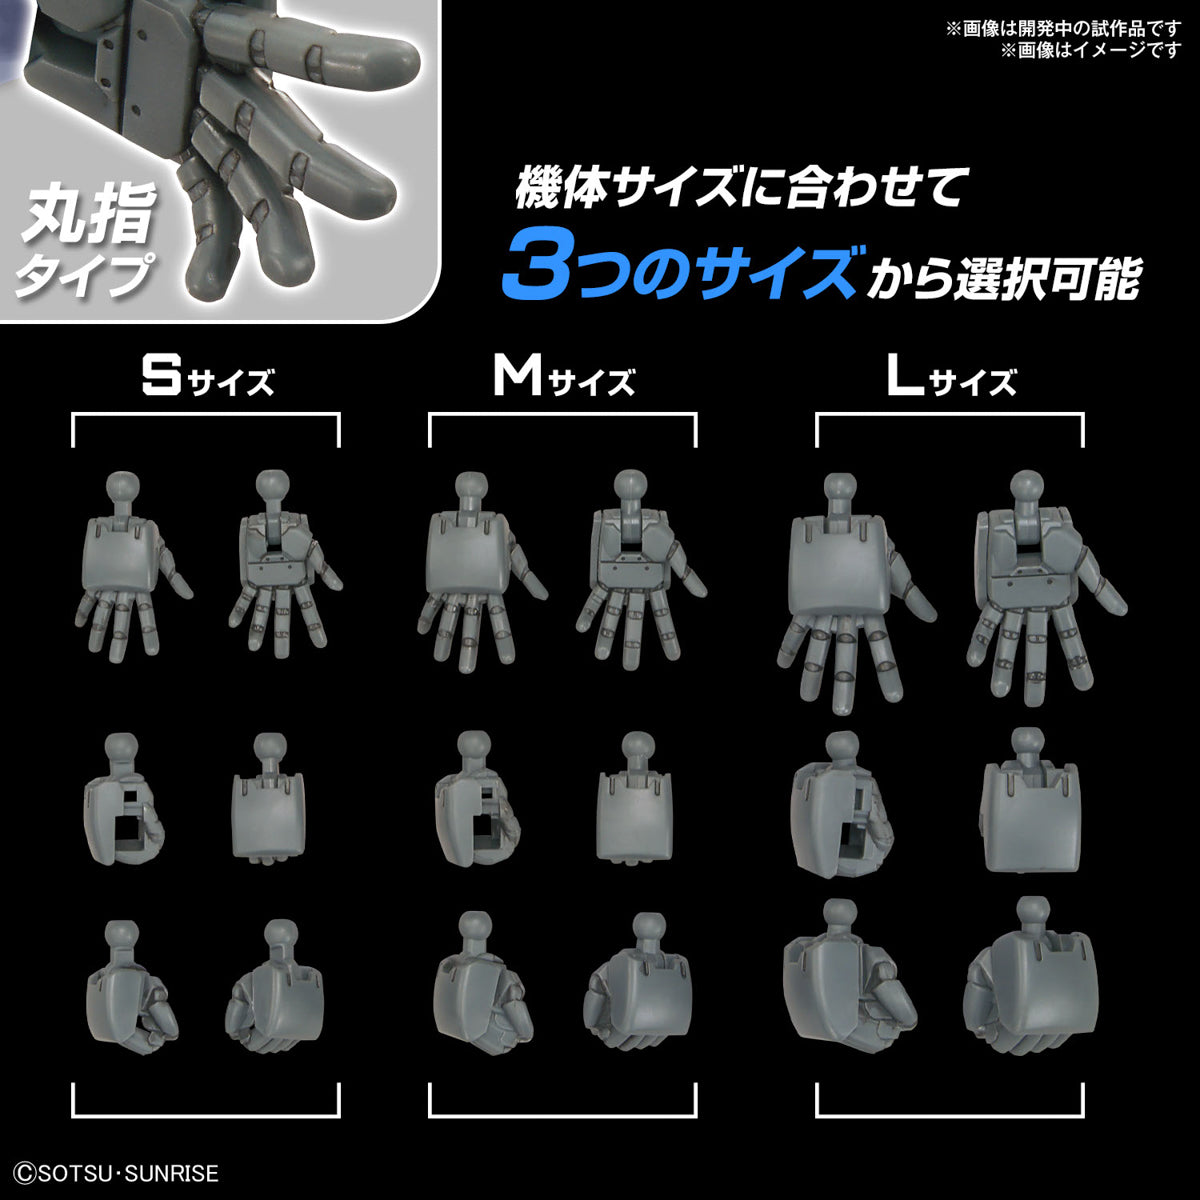 [PRE-ORDER] Gundam Option Parts Set Gunpla 04 (Build Hands Round Shape)